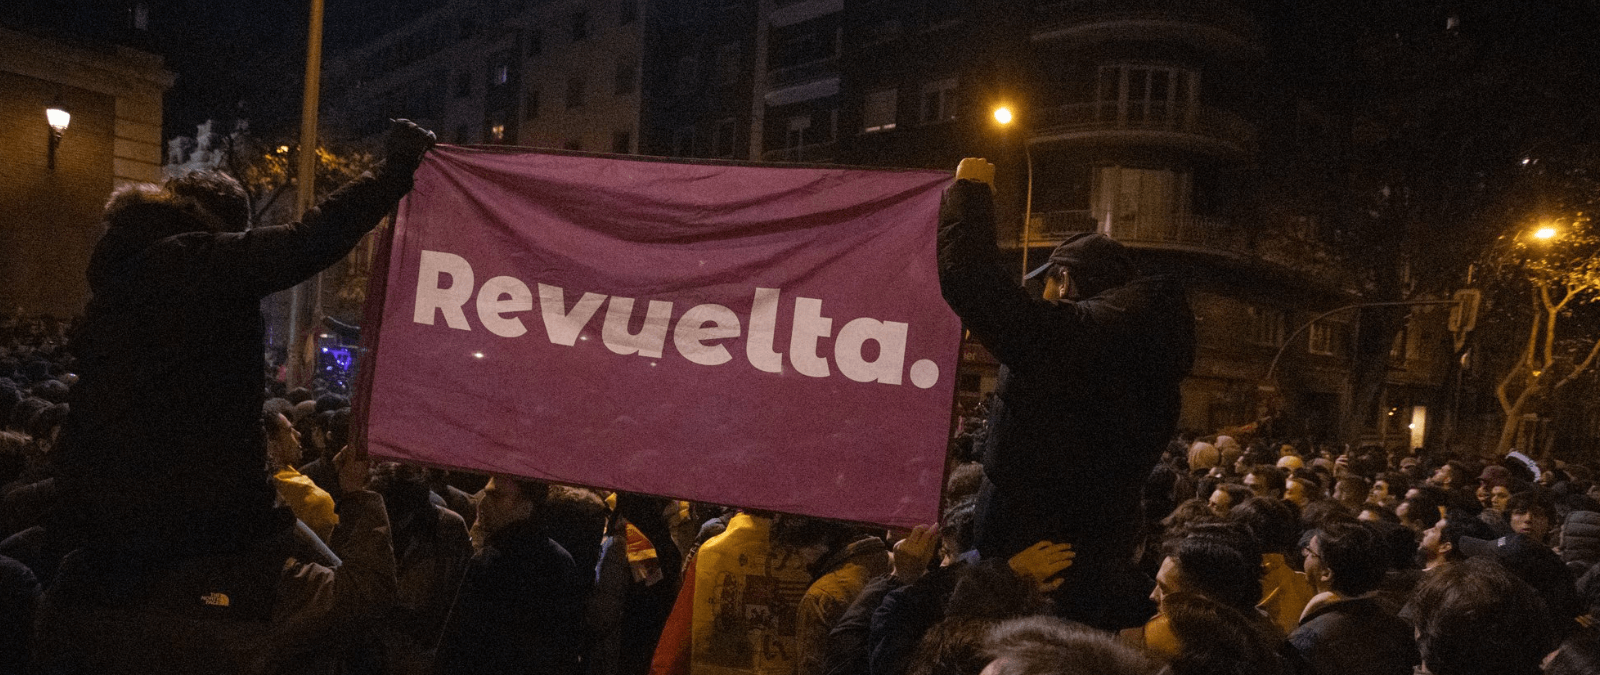 Qué es el grupo Revuelta que ha promovido manifestaciones en Madrid y Barcelona contra la amnistía